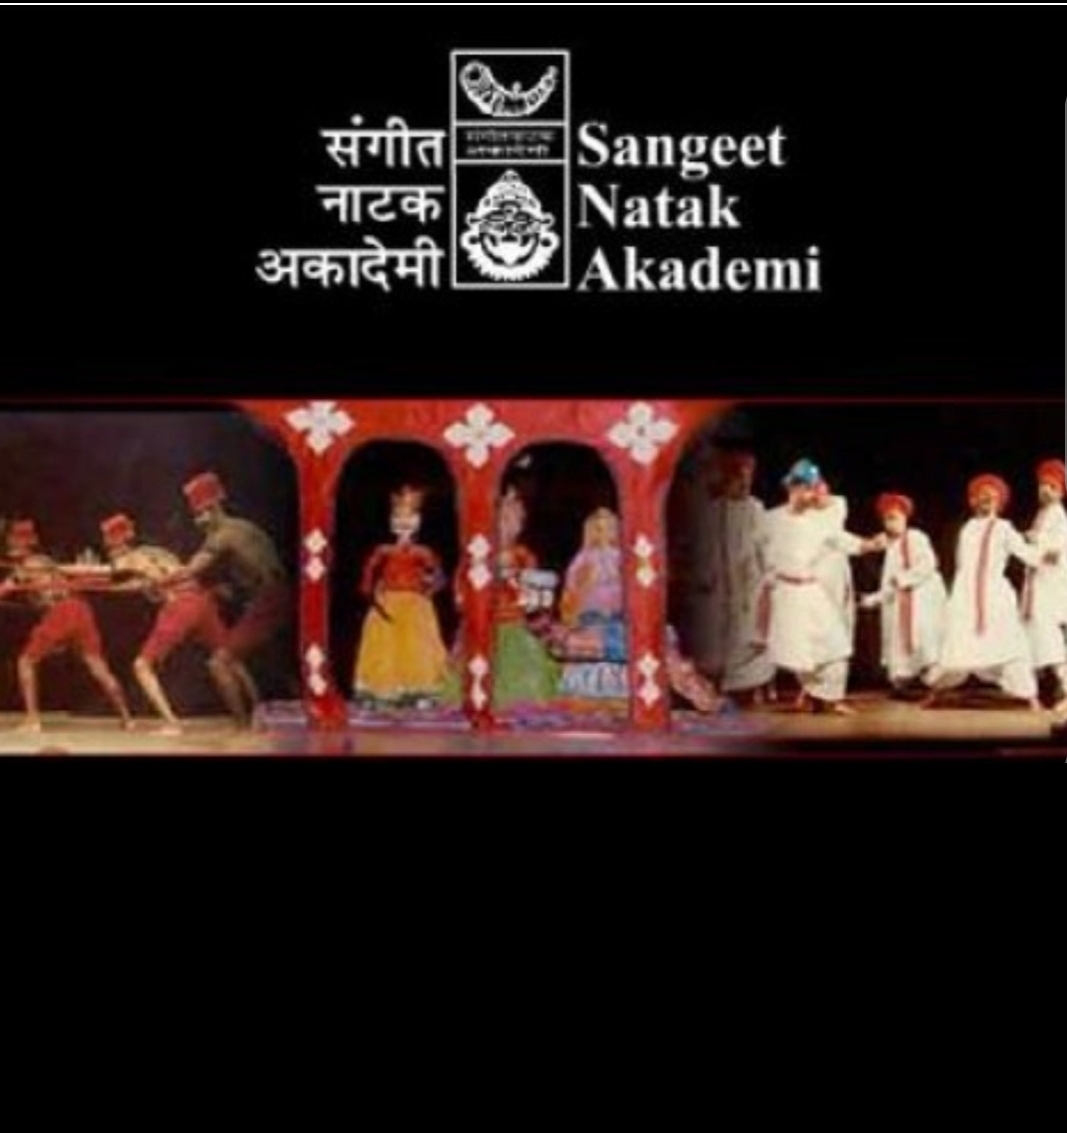 रंगकर्मी नाट्य मंचन निर्देशन आर्ट पेंटिंग में भी है महारत